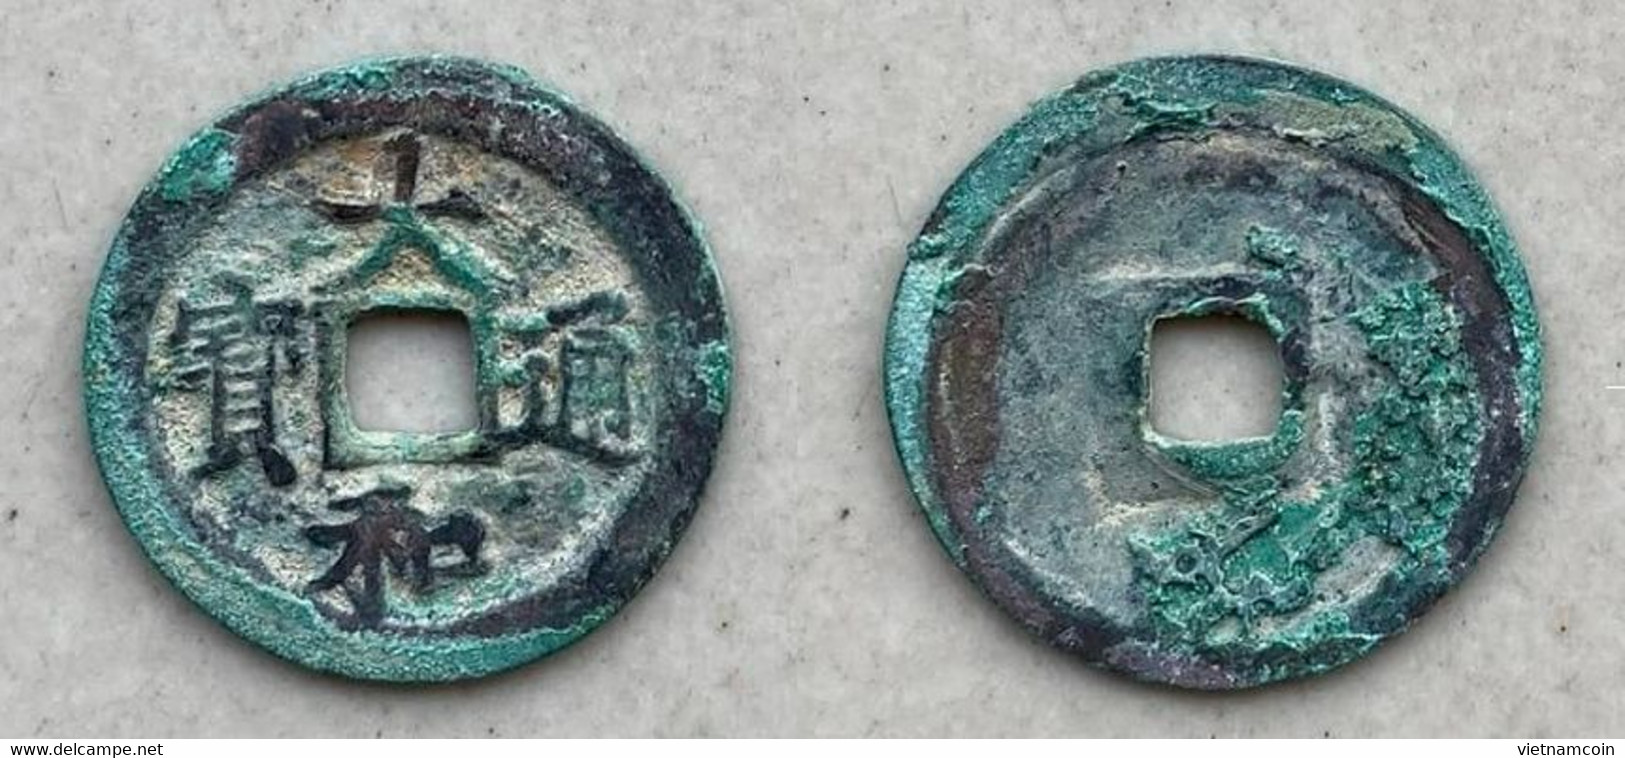 Ancient Annam Coin  Thai Hoa Thong Bao 1443-1453 - Vietnam